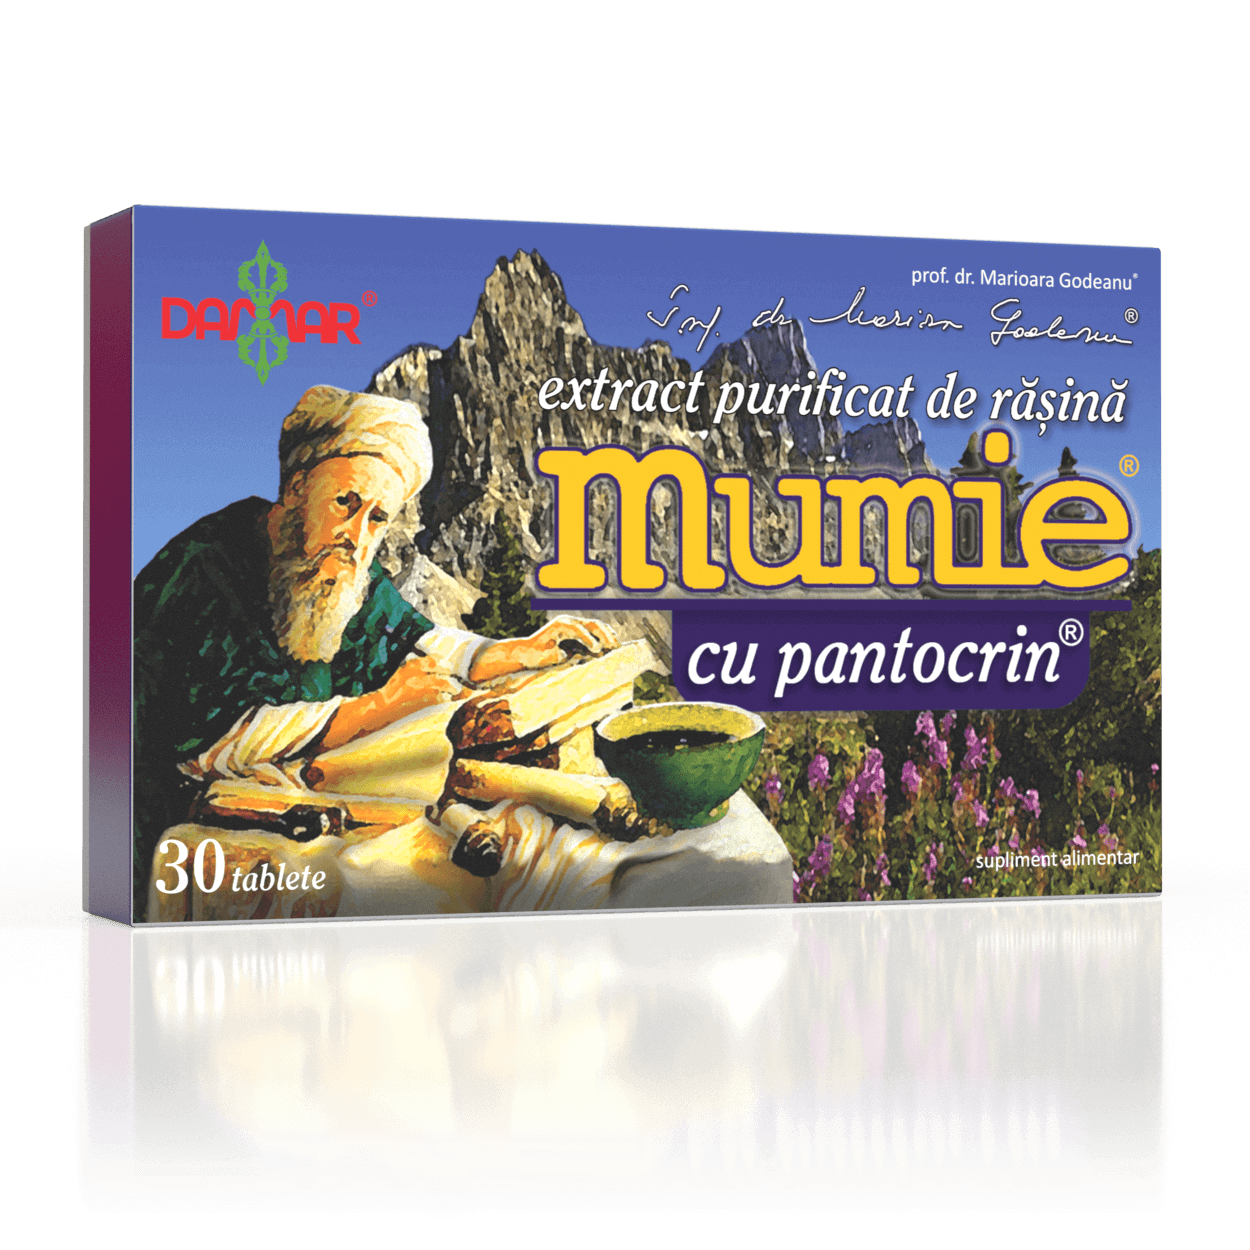 Extract purificat de rășină - Mumie cu Pantocrin, 30 tablete, Damar General Trading